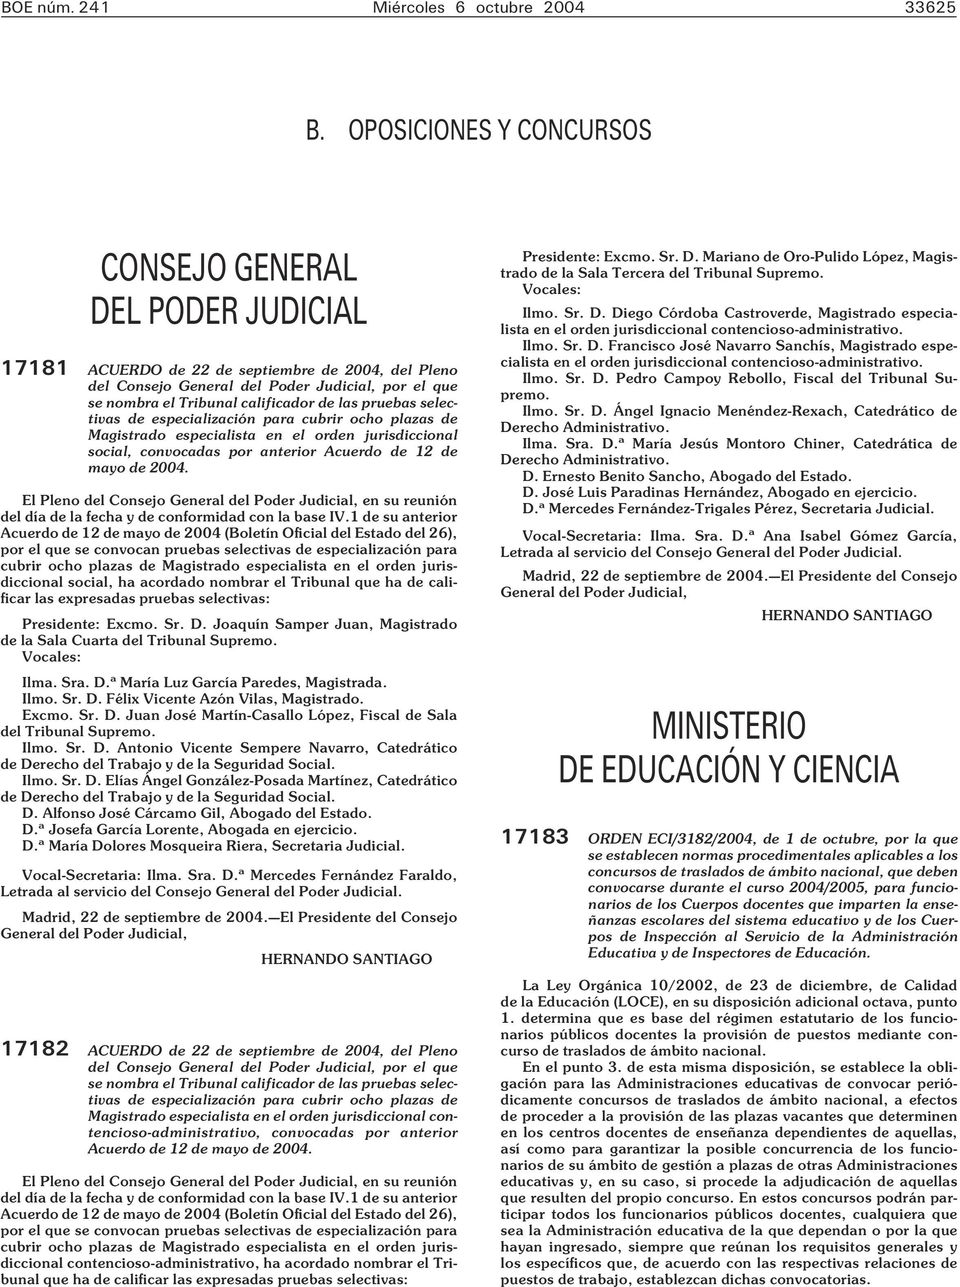 las pruebas selectivas de especialización para cubrir ocho plazas de Magistrado especialista en el orden jurisdiccional social, convocadas por anterior Acuerdo de 12 de mayo de 2004.